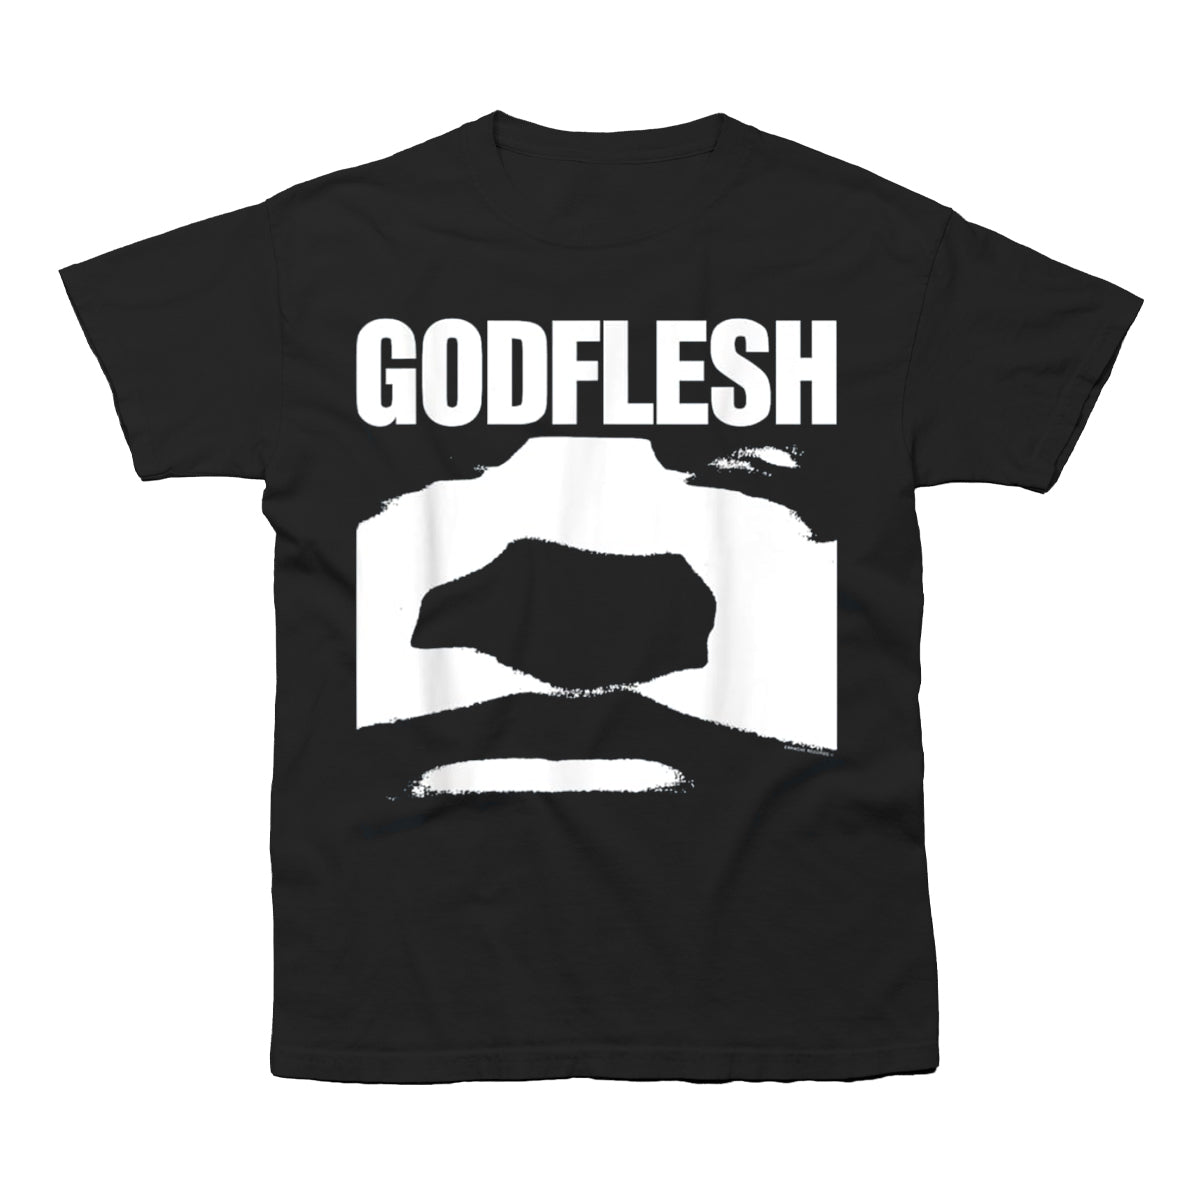 Godflesh "Godflesh" T shirt